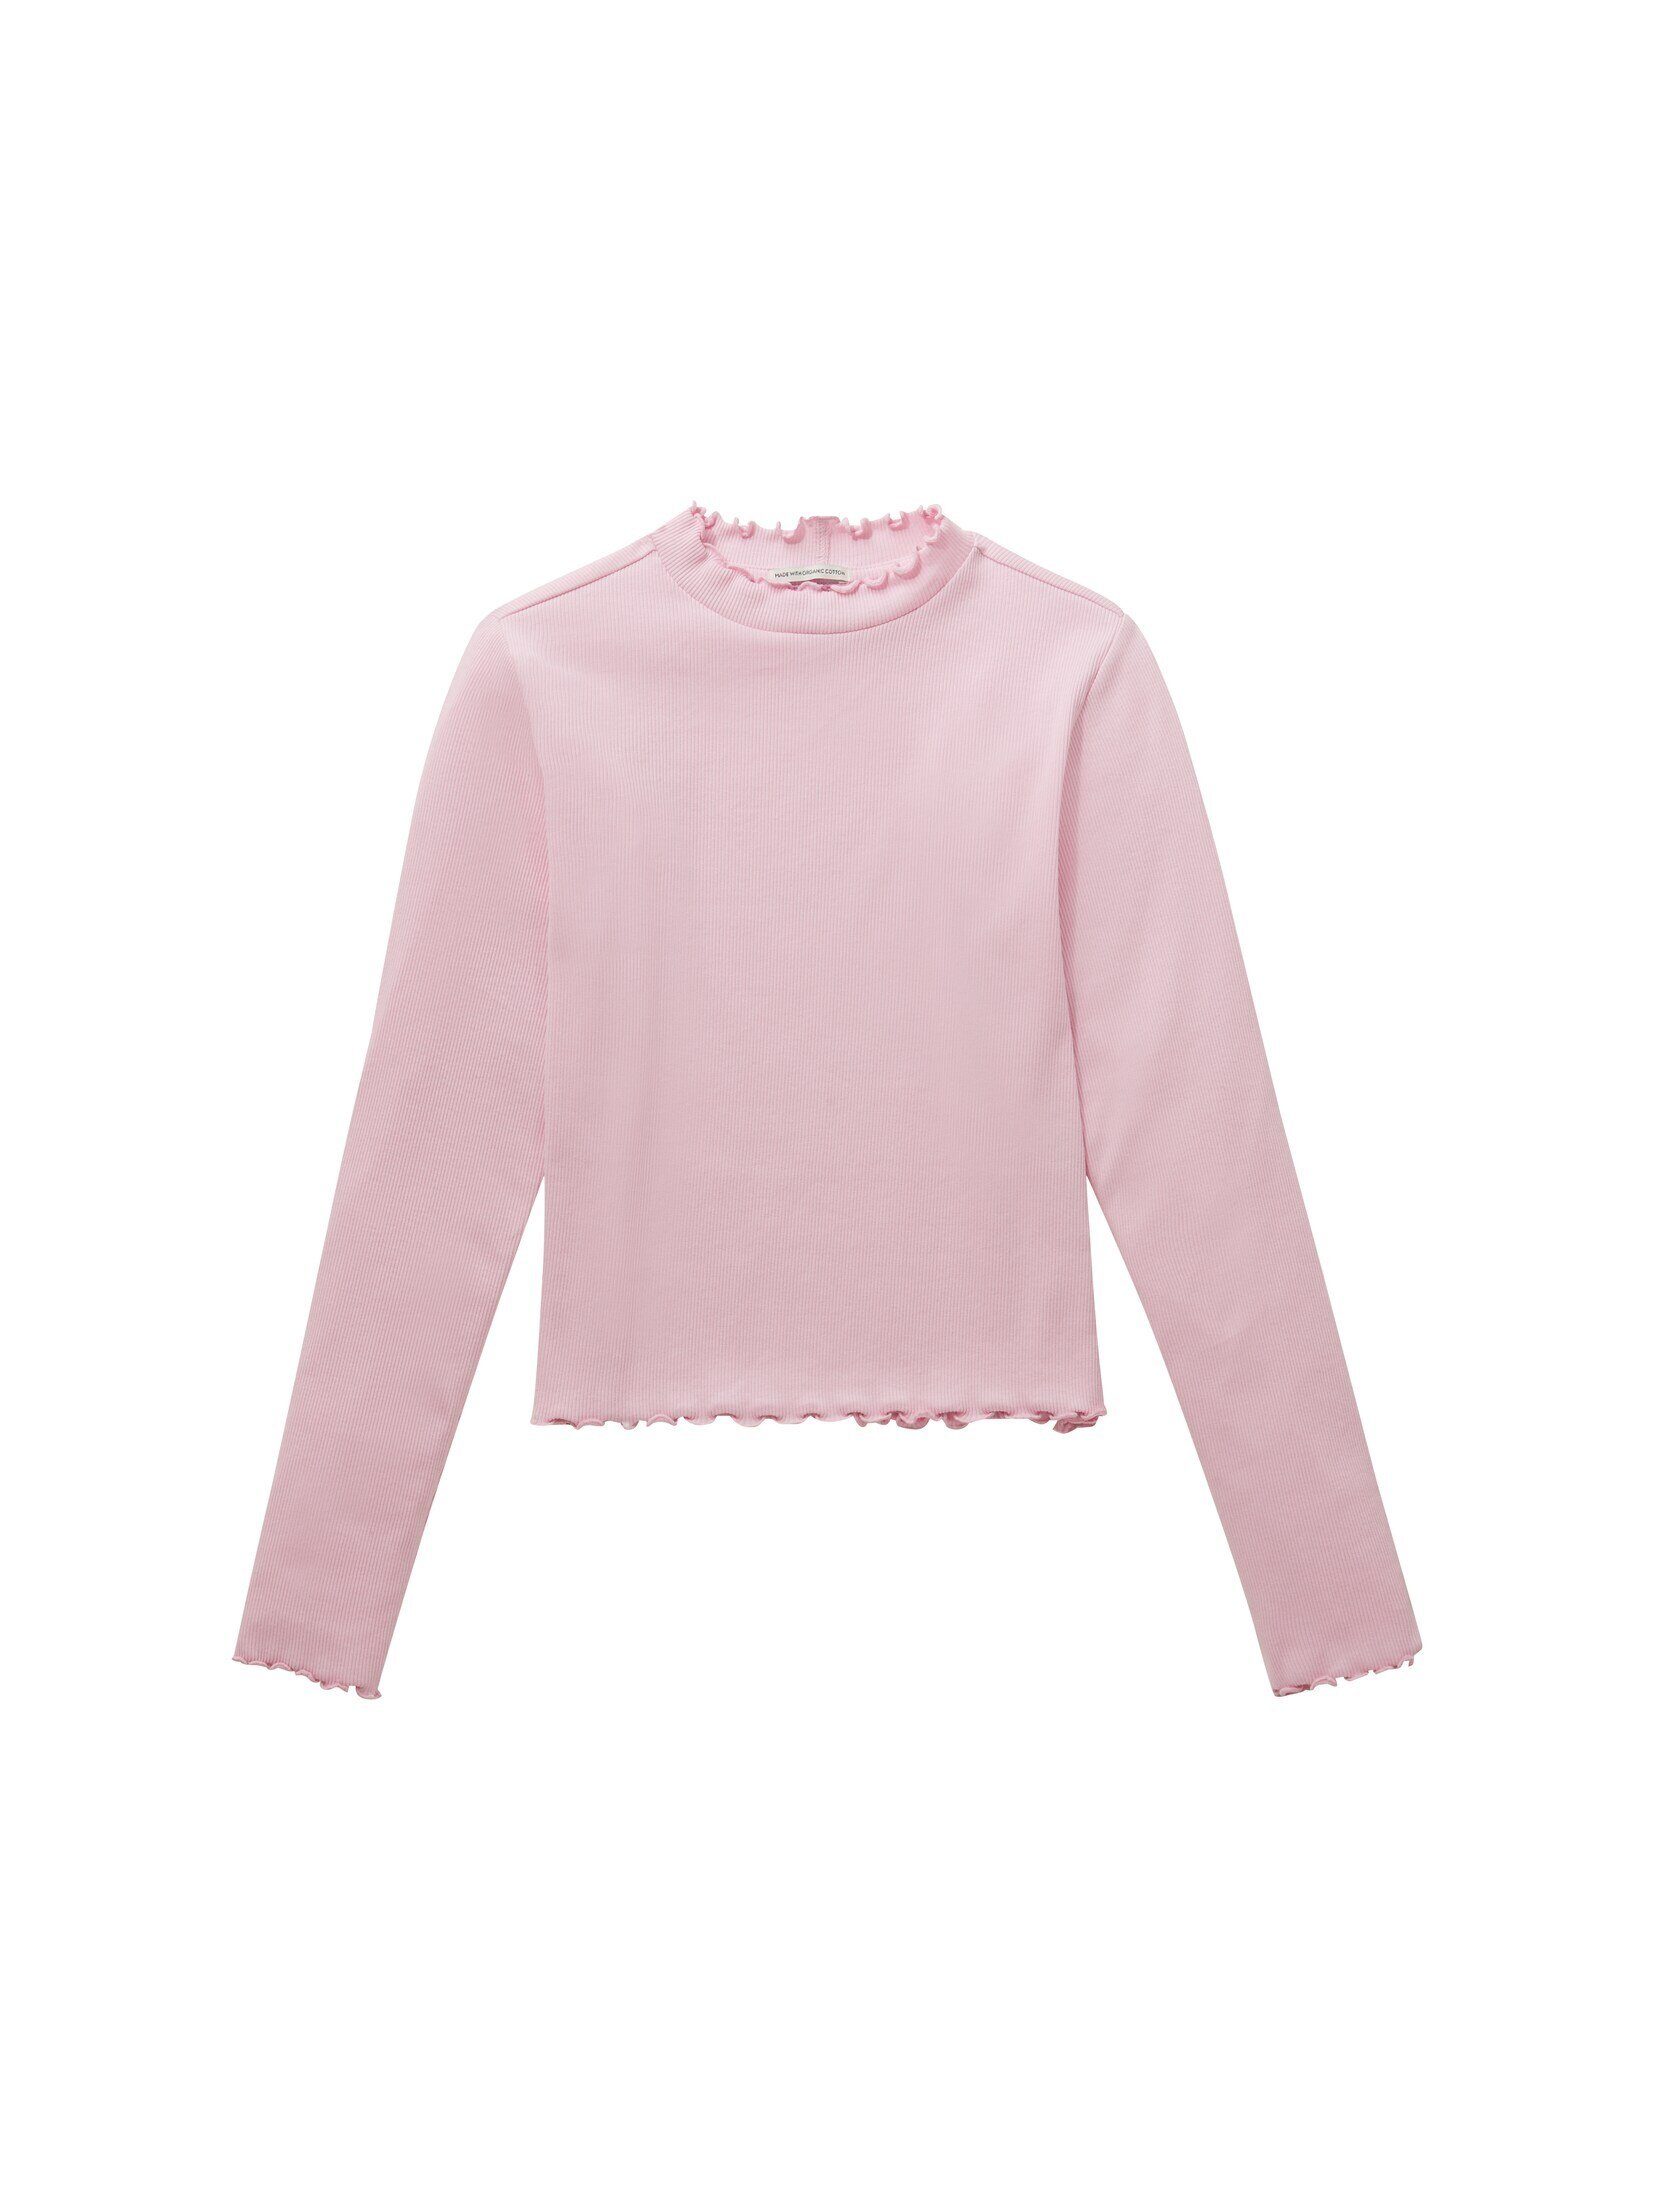 TOM TAILOR T-Shirt Cropped Langarmshirt sweet pink